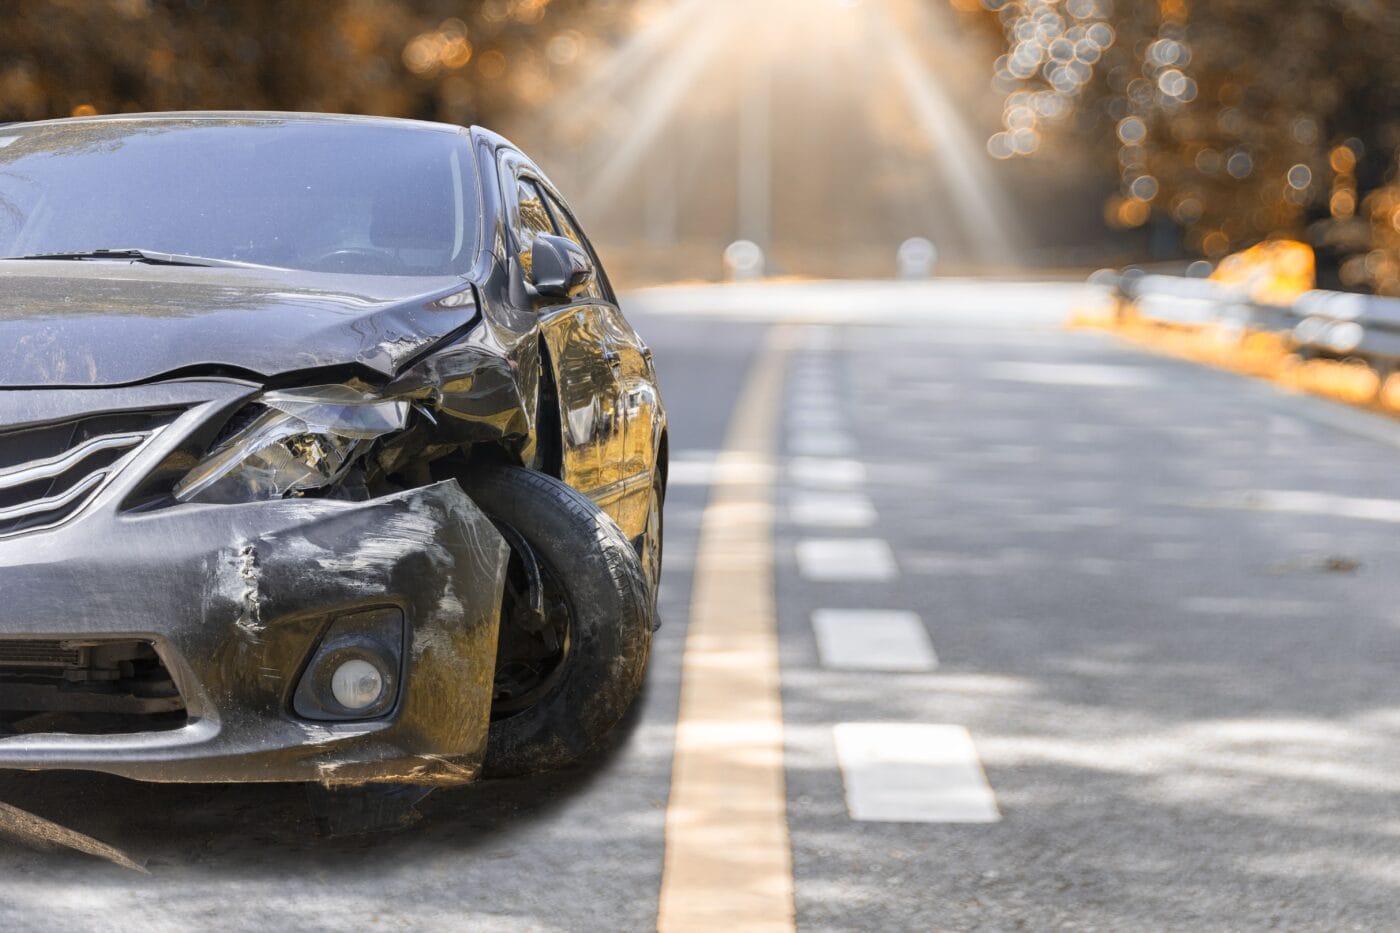 Selbstunfall unter Alkoholeinfluss: Mehrere Autos beschädigt – eine Person verletzt